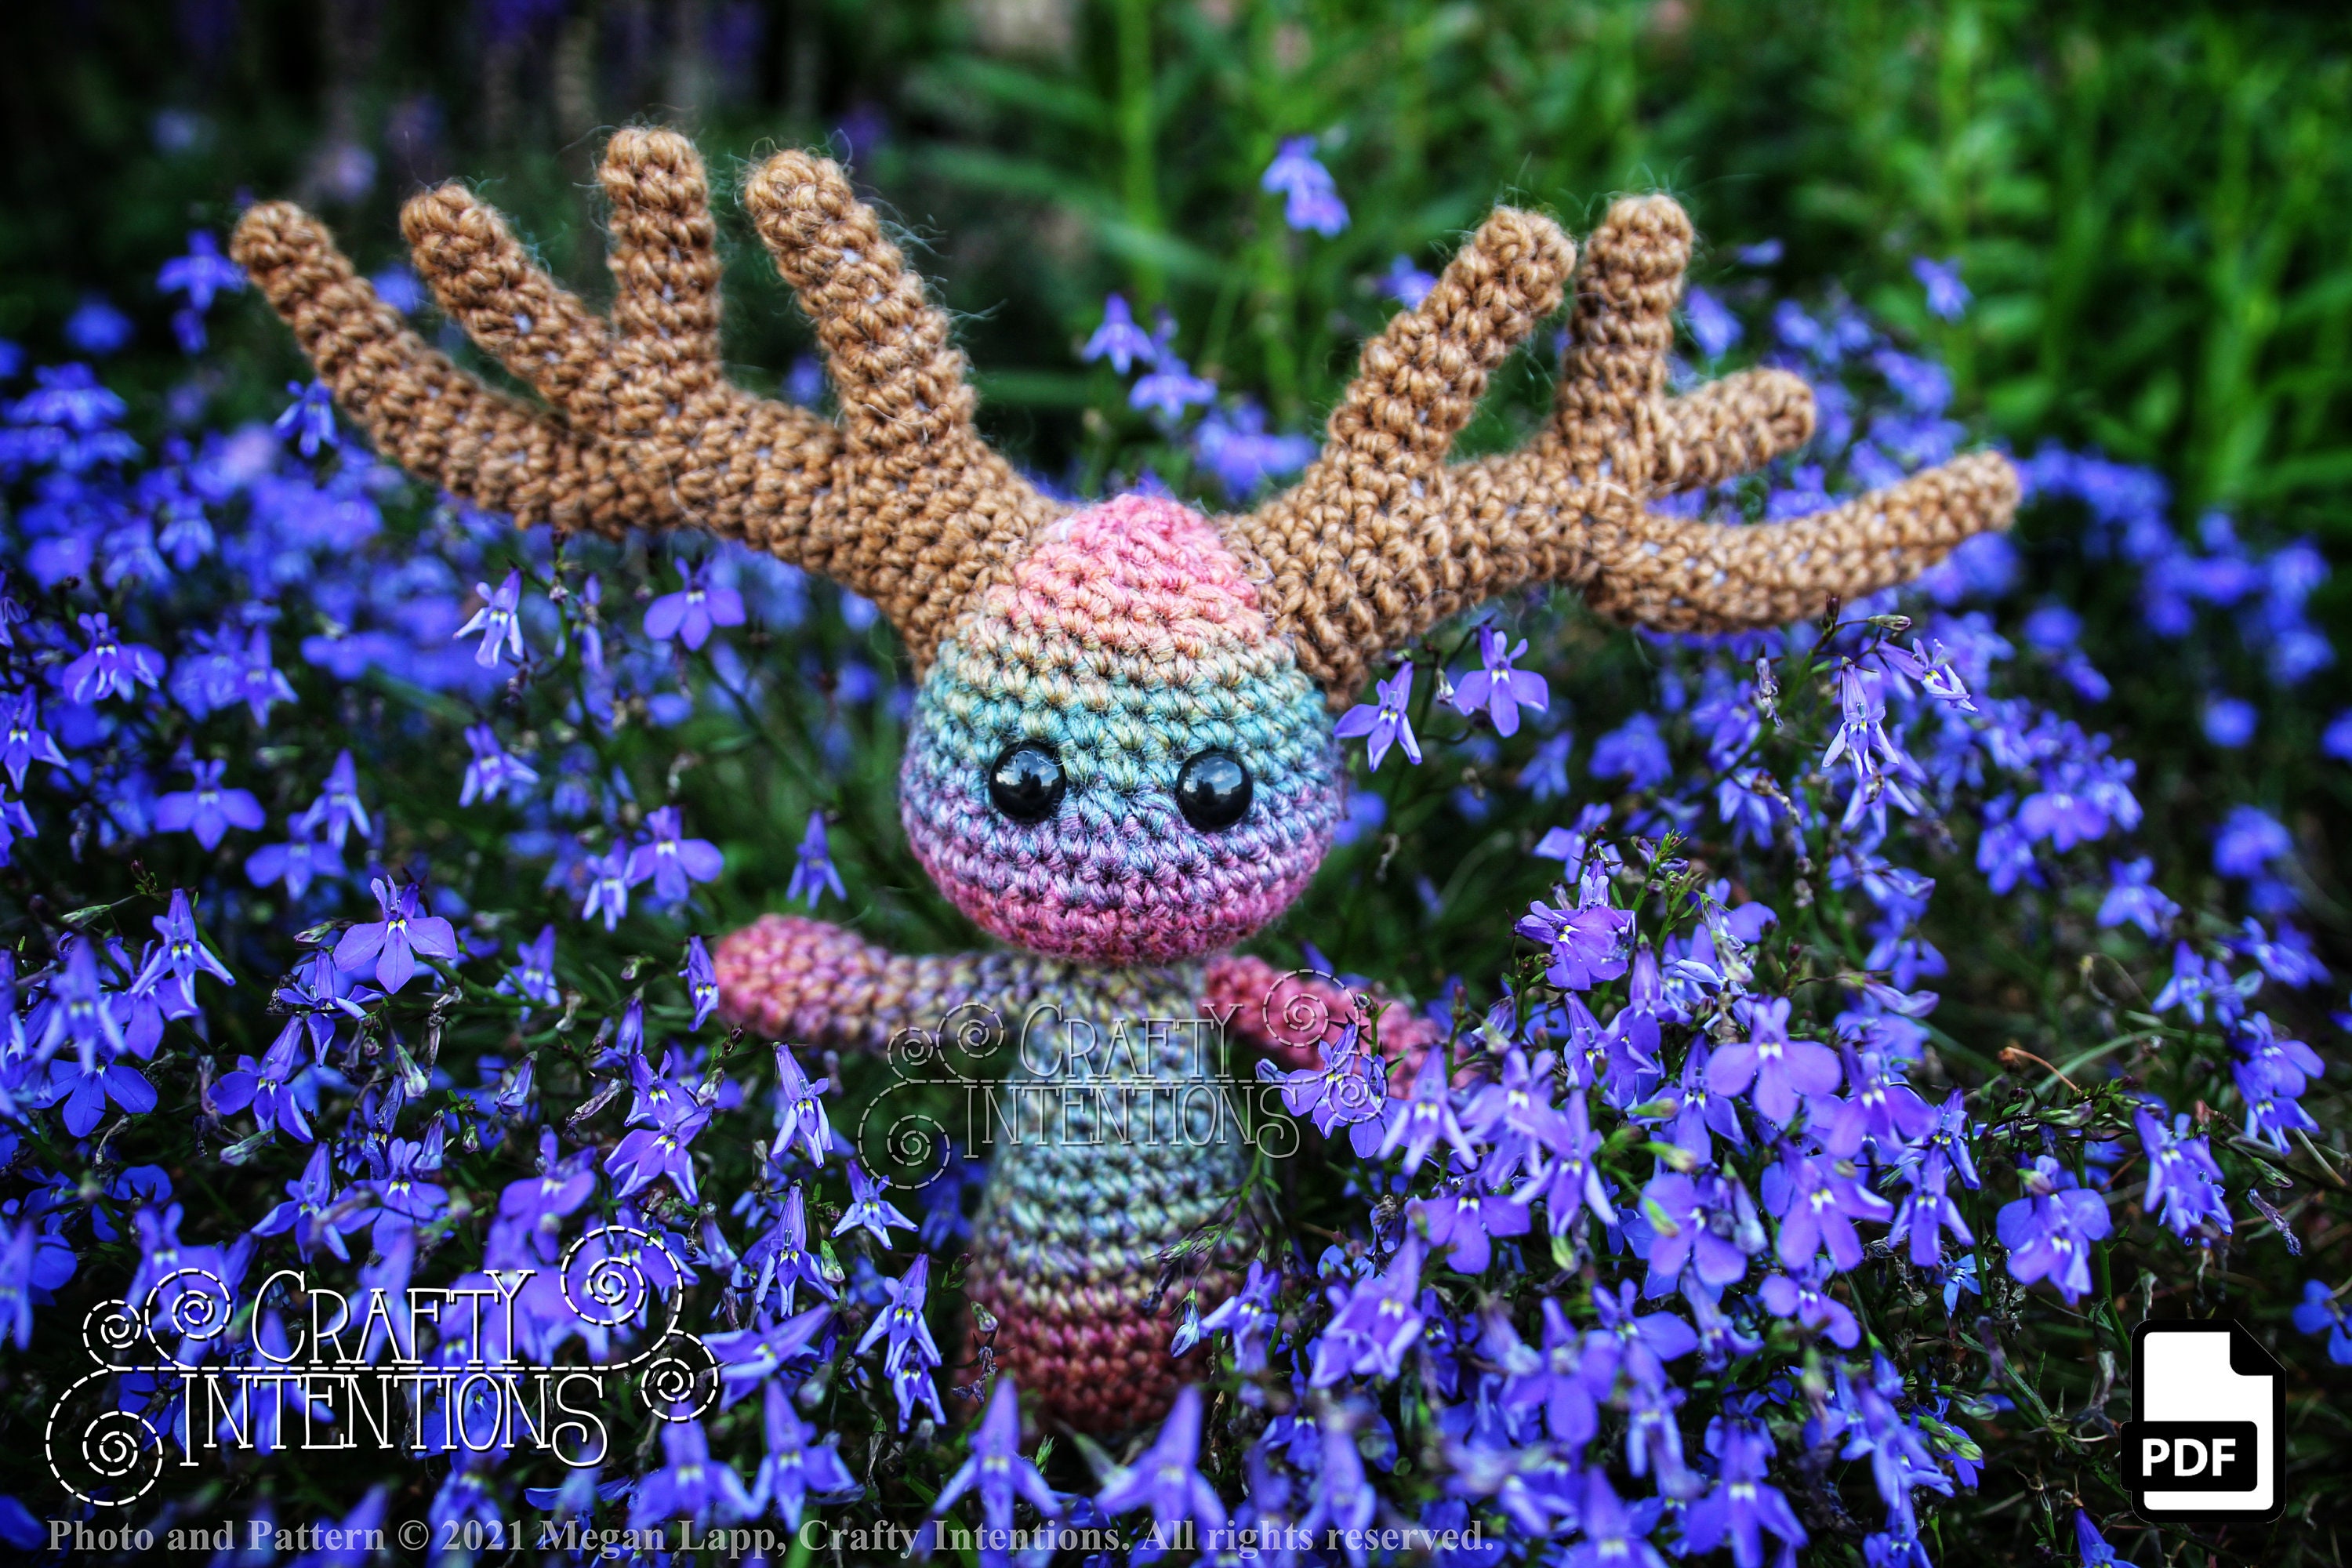 Search Press  Crochet Impkins by Megan Lapp